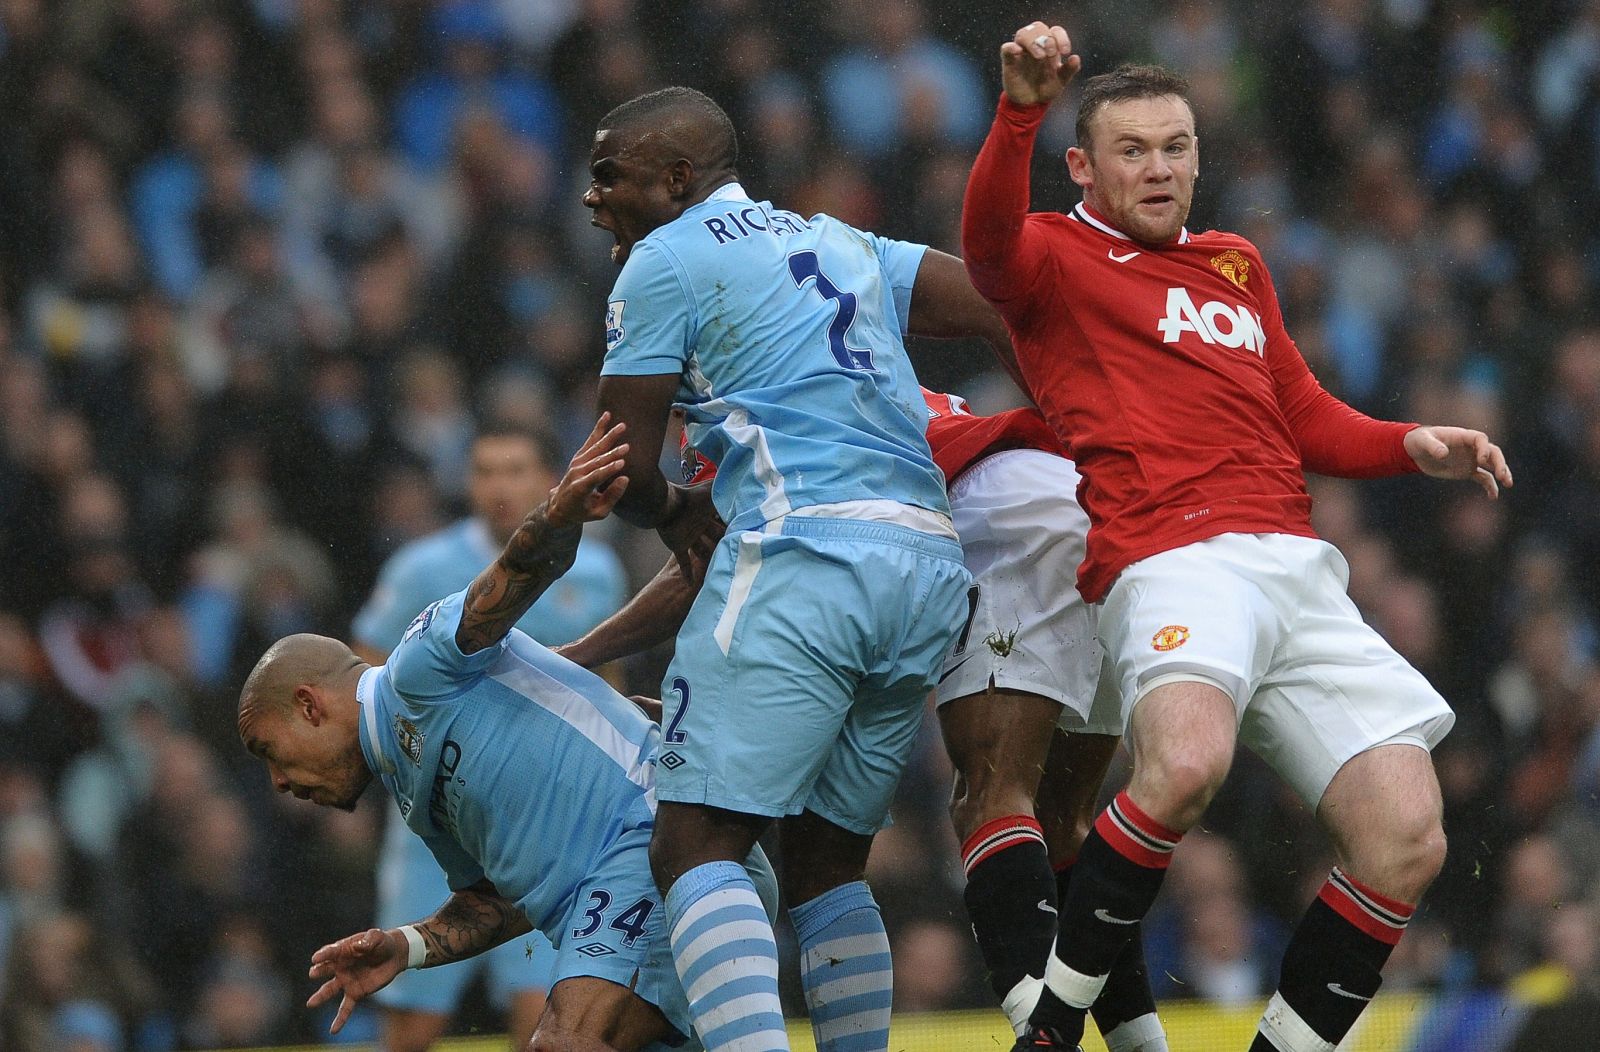 El jugador del Manchester United, Rooney, pelea un balón contra Micah Richards, del Manchester City